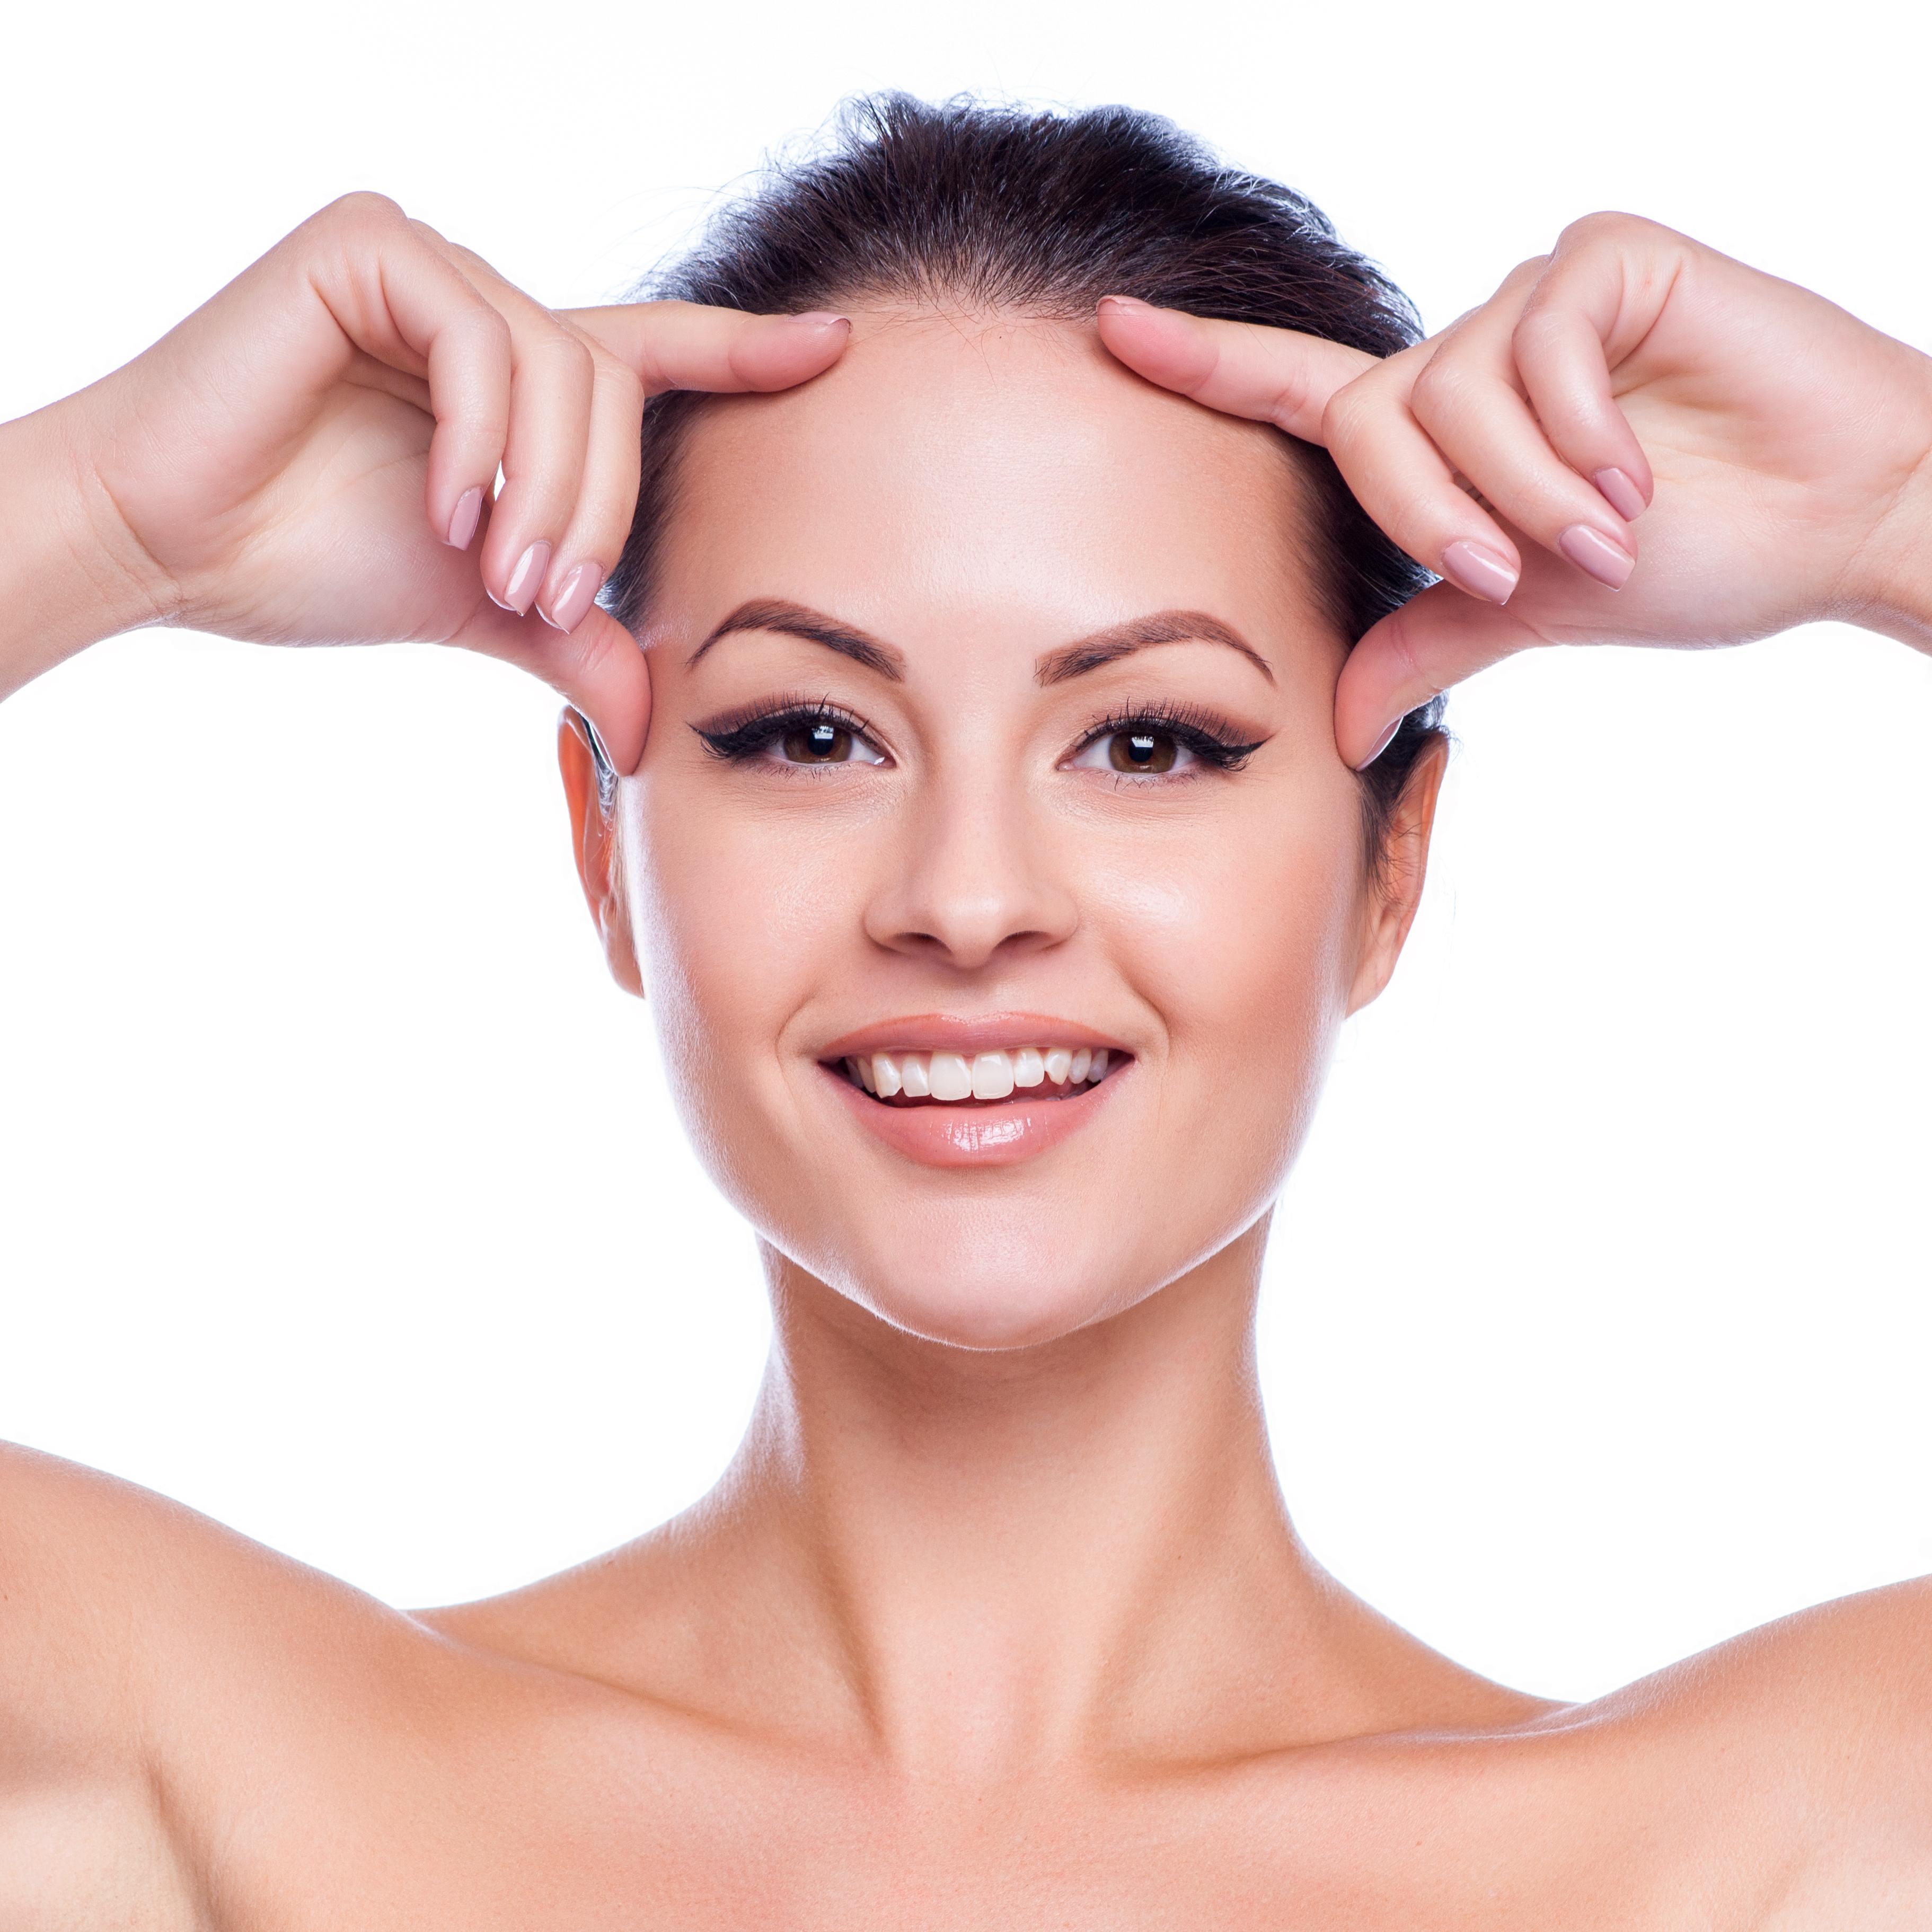 Seis beneficios de los Hilos Tensores para rejuvenecer tu rostro